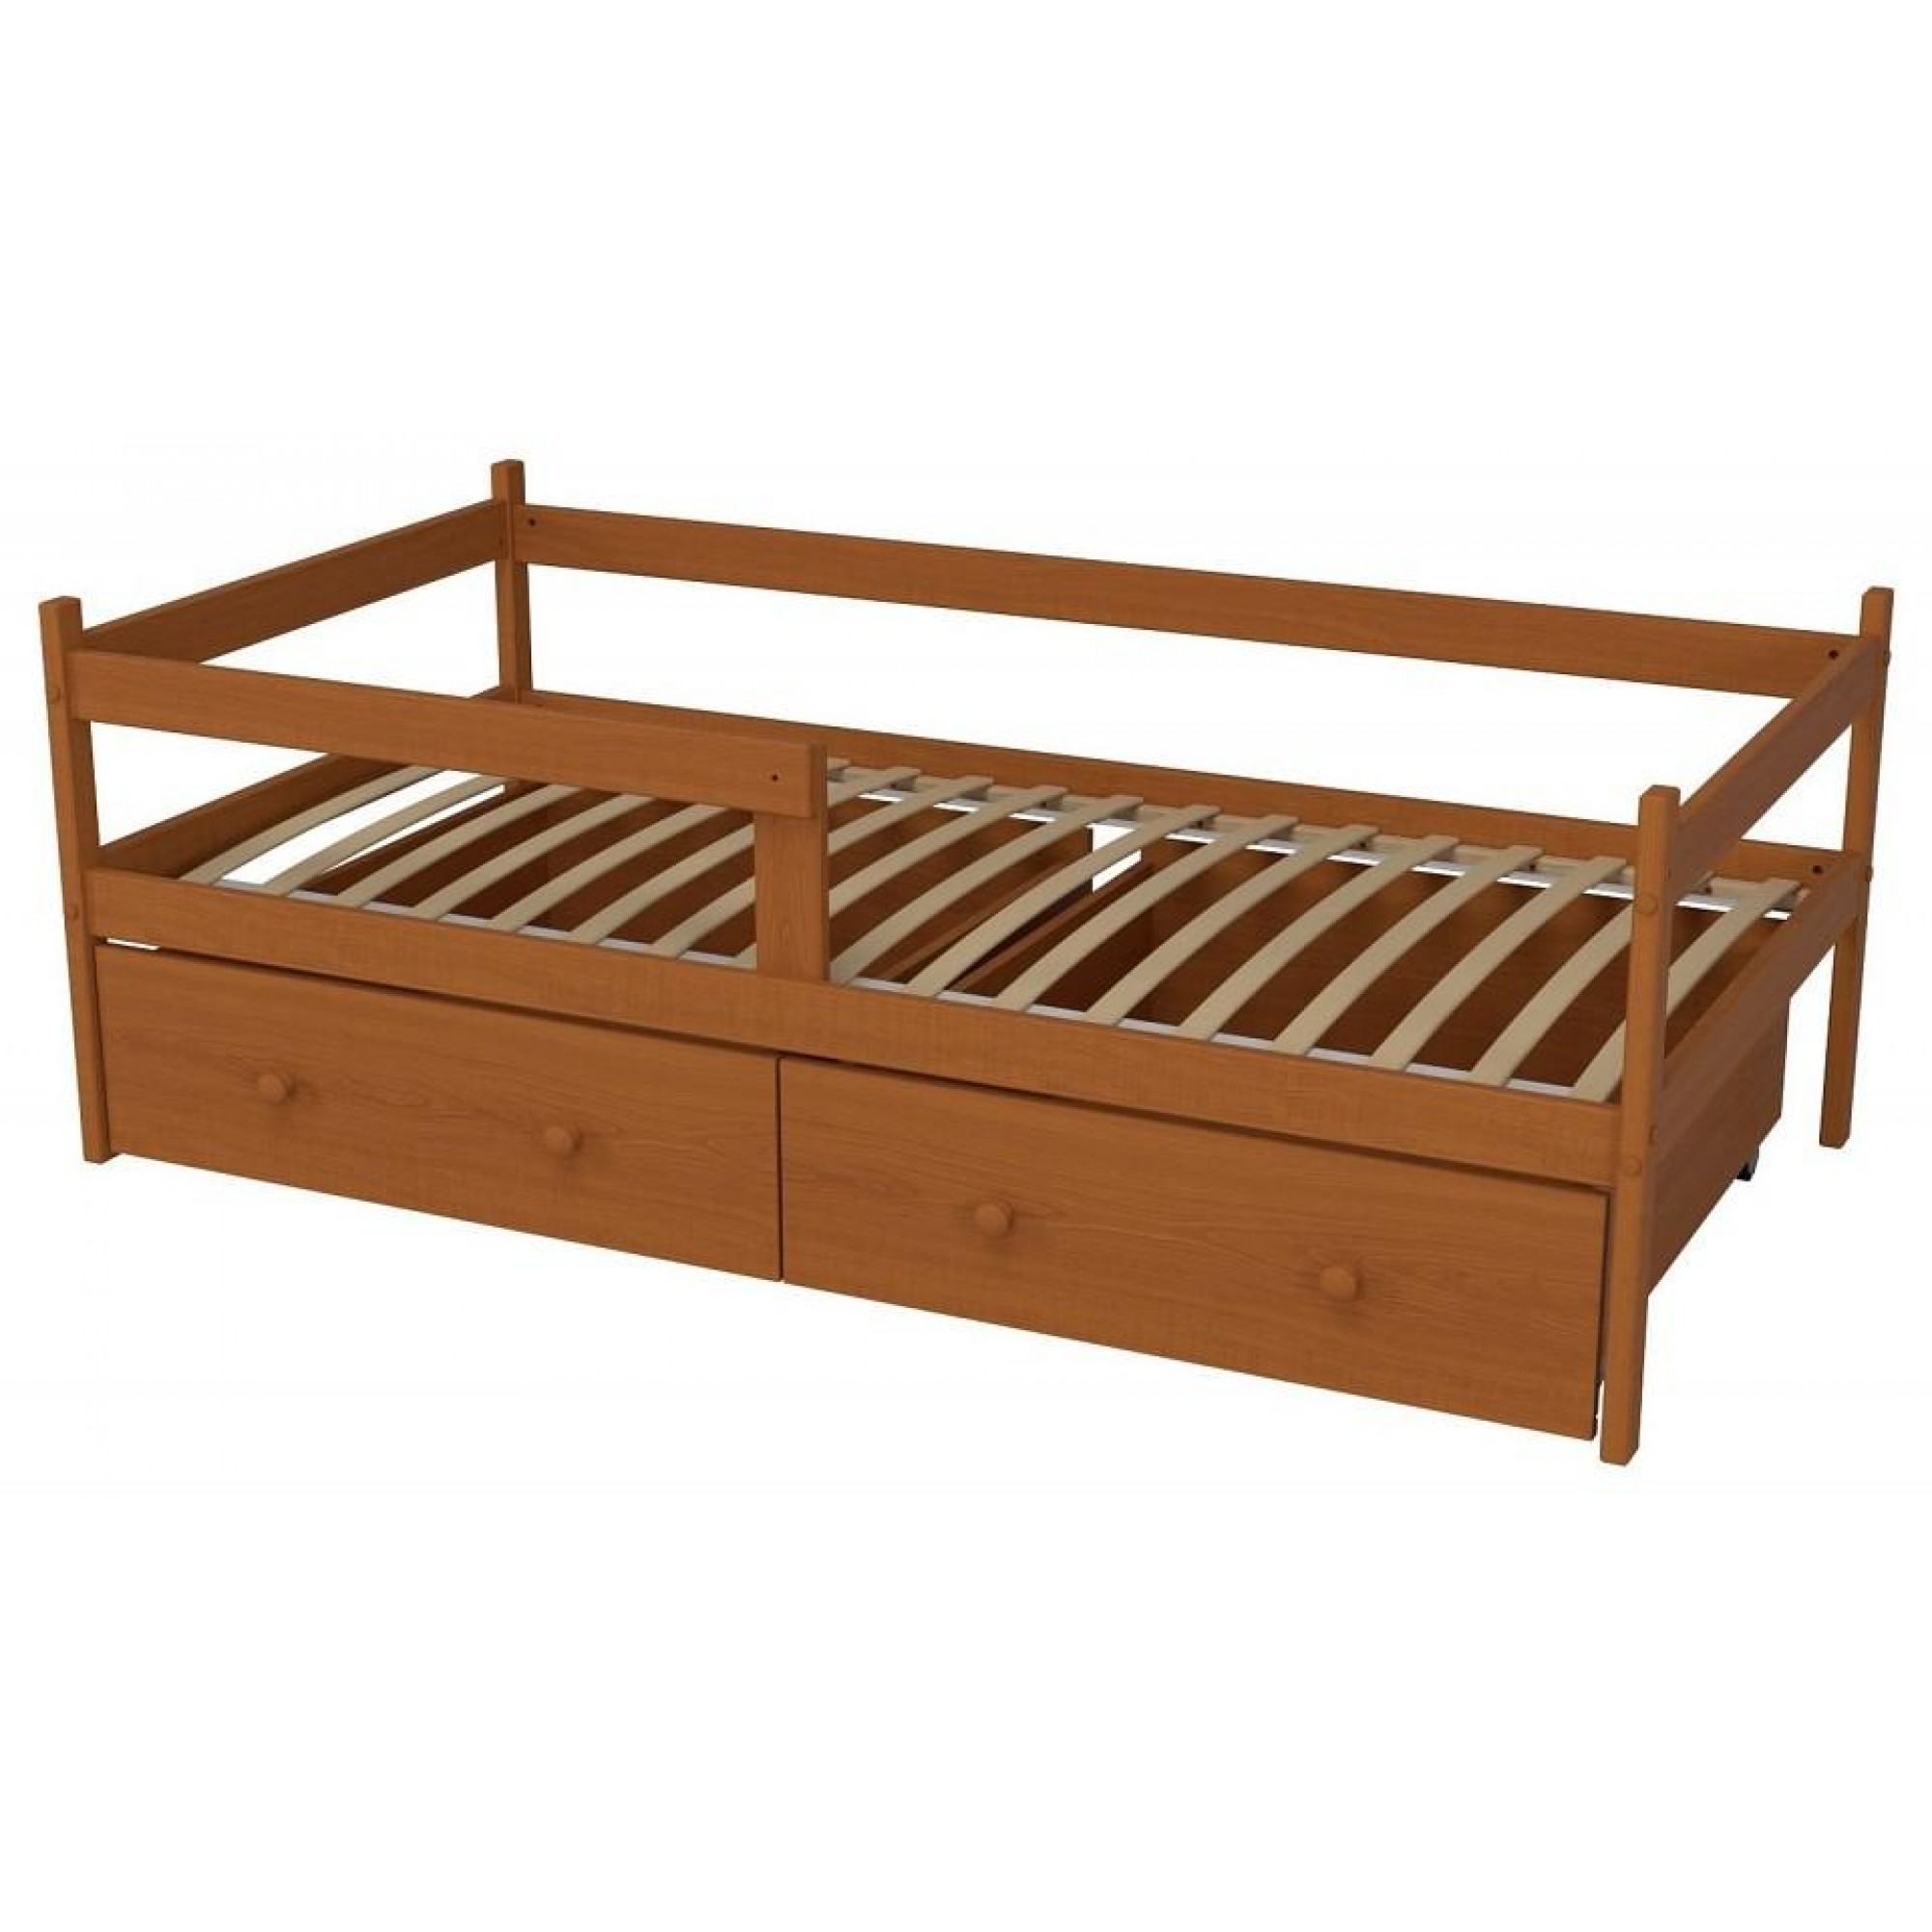 Кровать Р425 древесина коричневая нейтральная ольха 1660x870x600(MZG_404566)